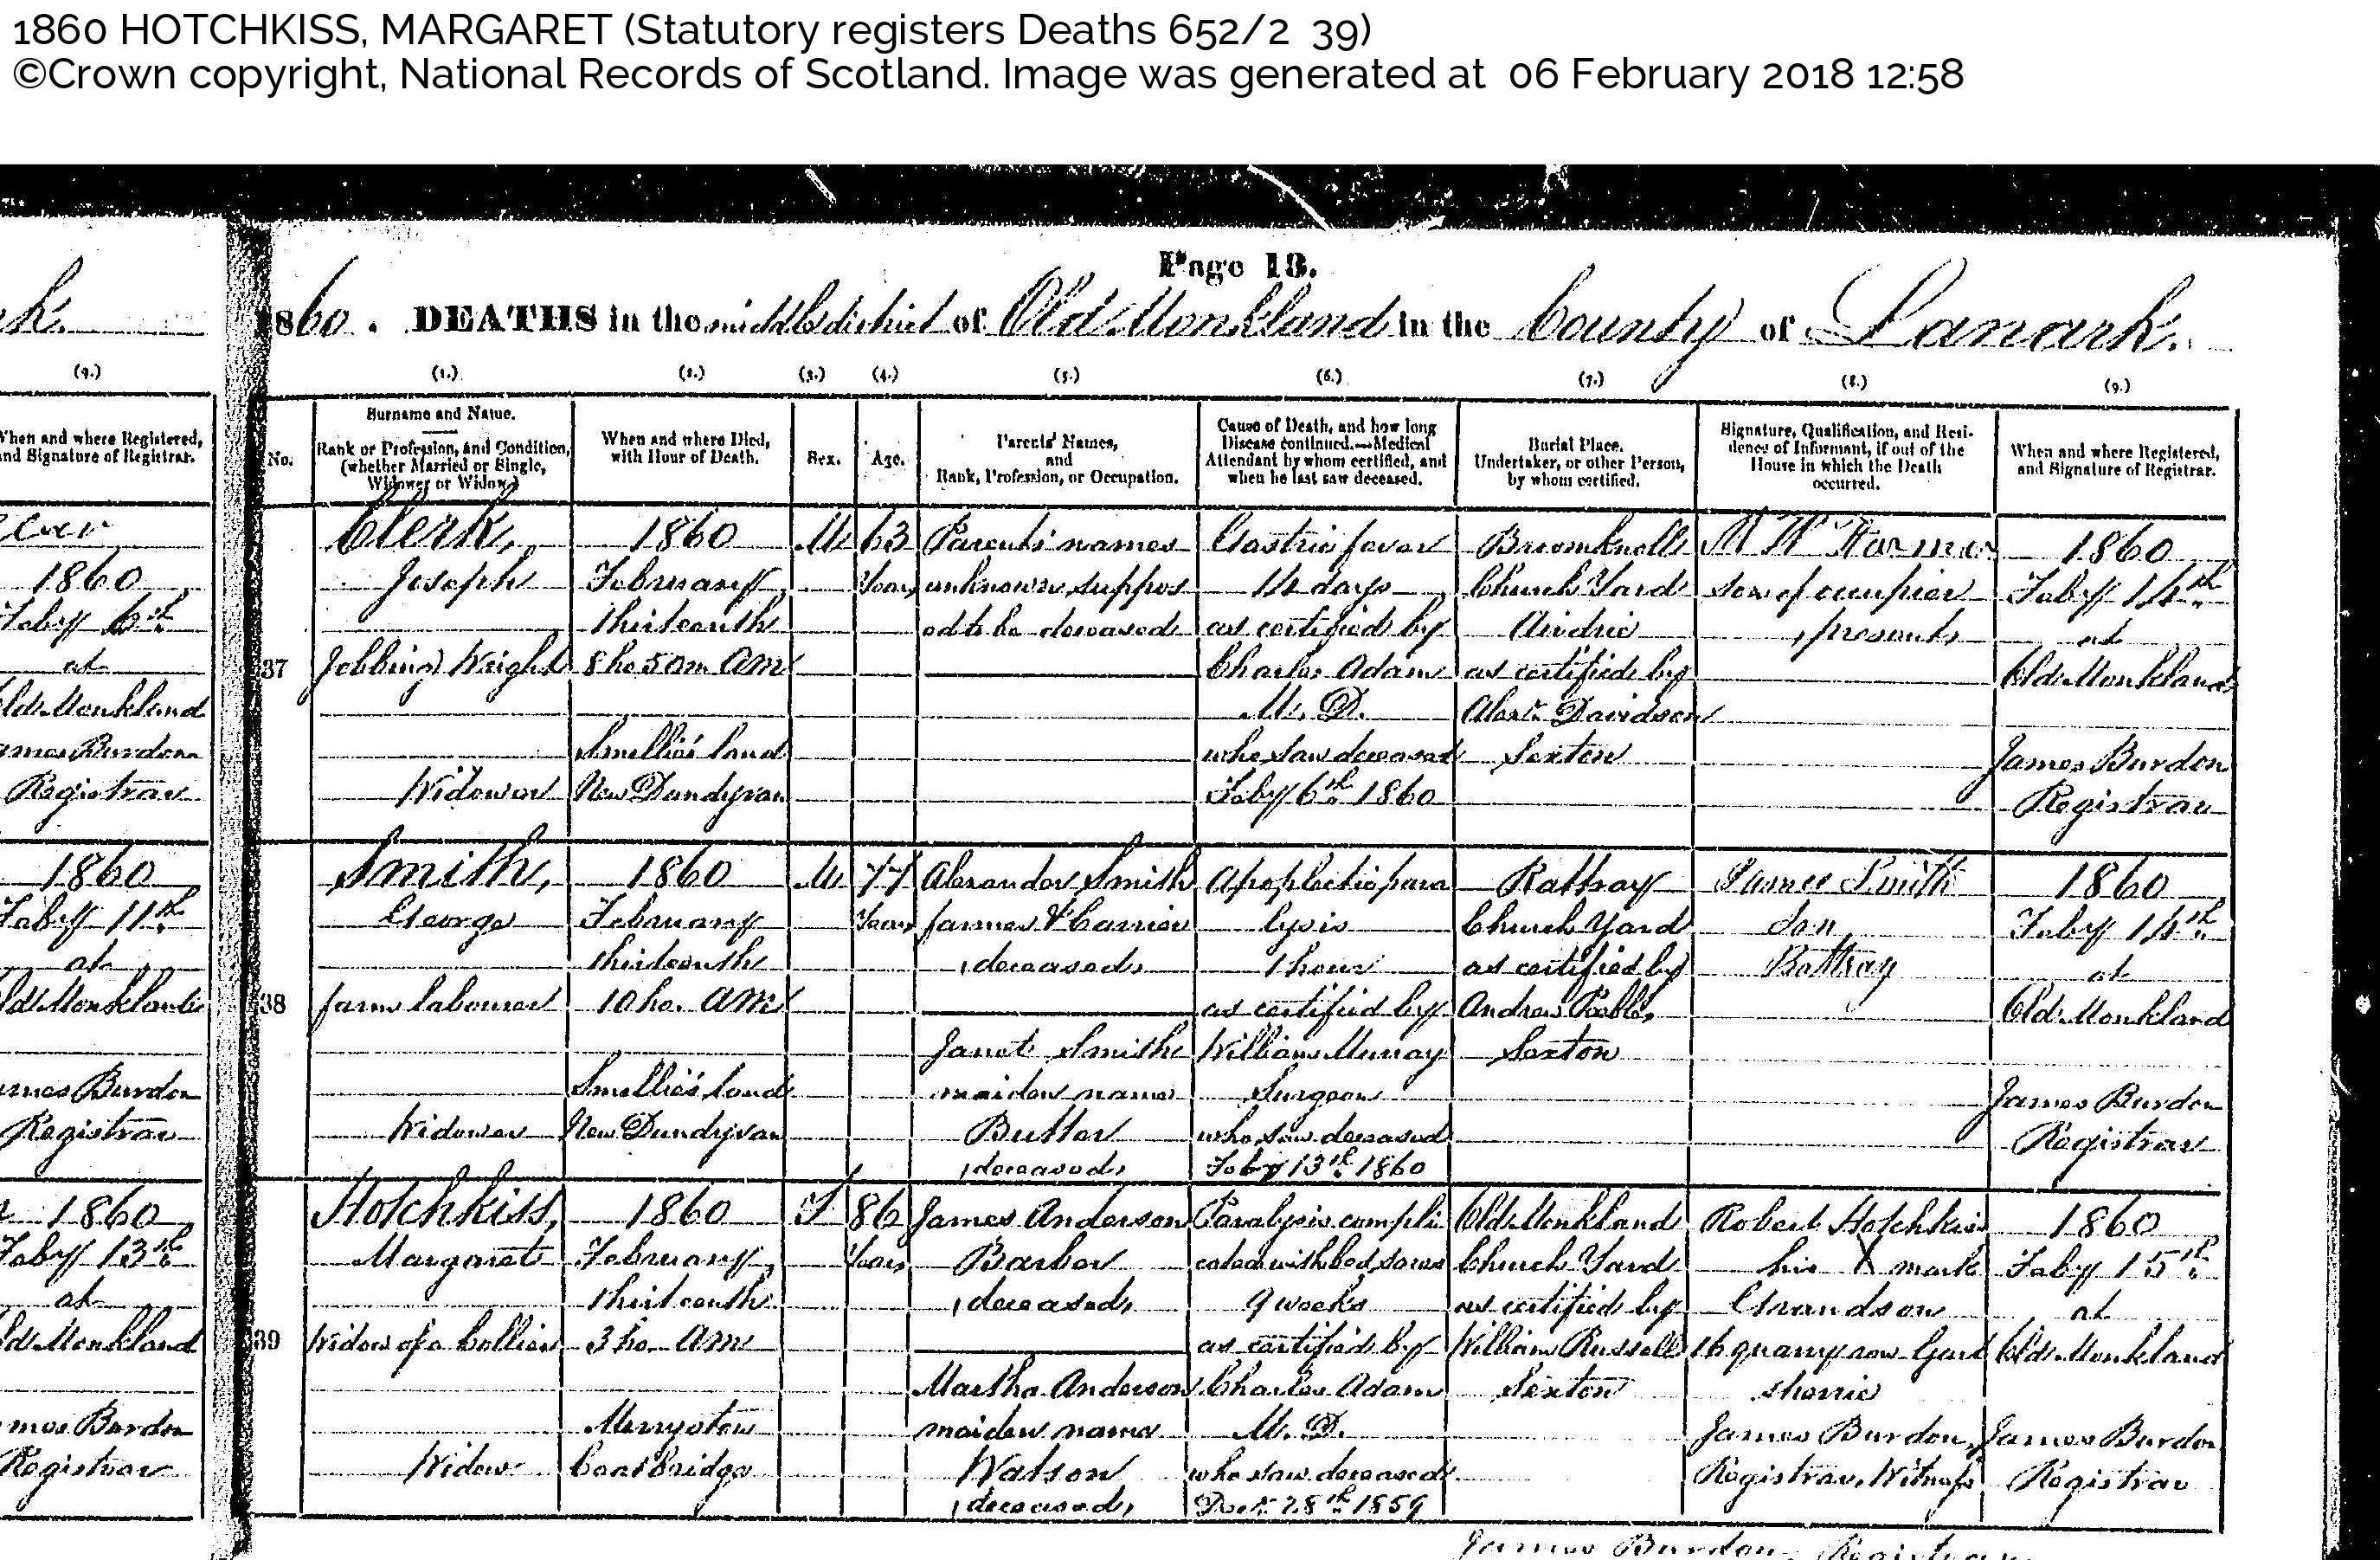 MargaretAnderson(Hotchkiss)_D1860 Coatbridge, February 13, 1860